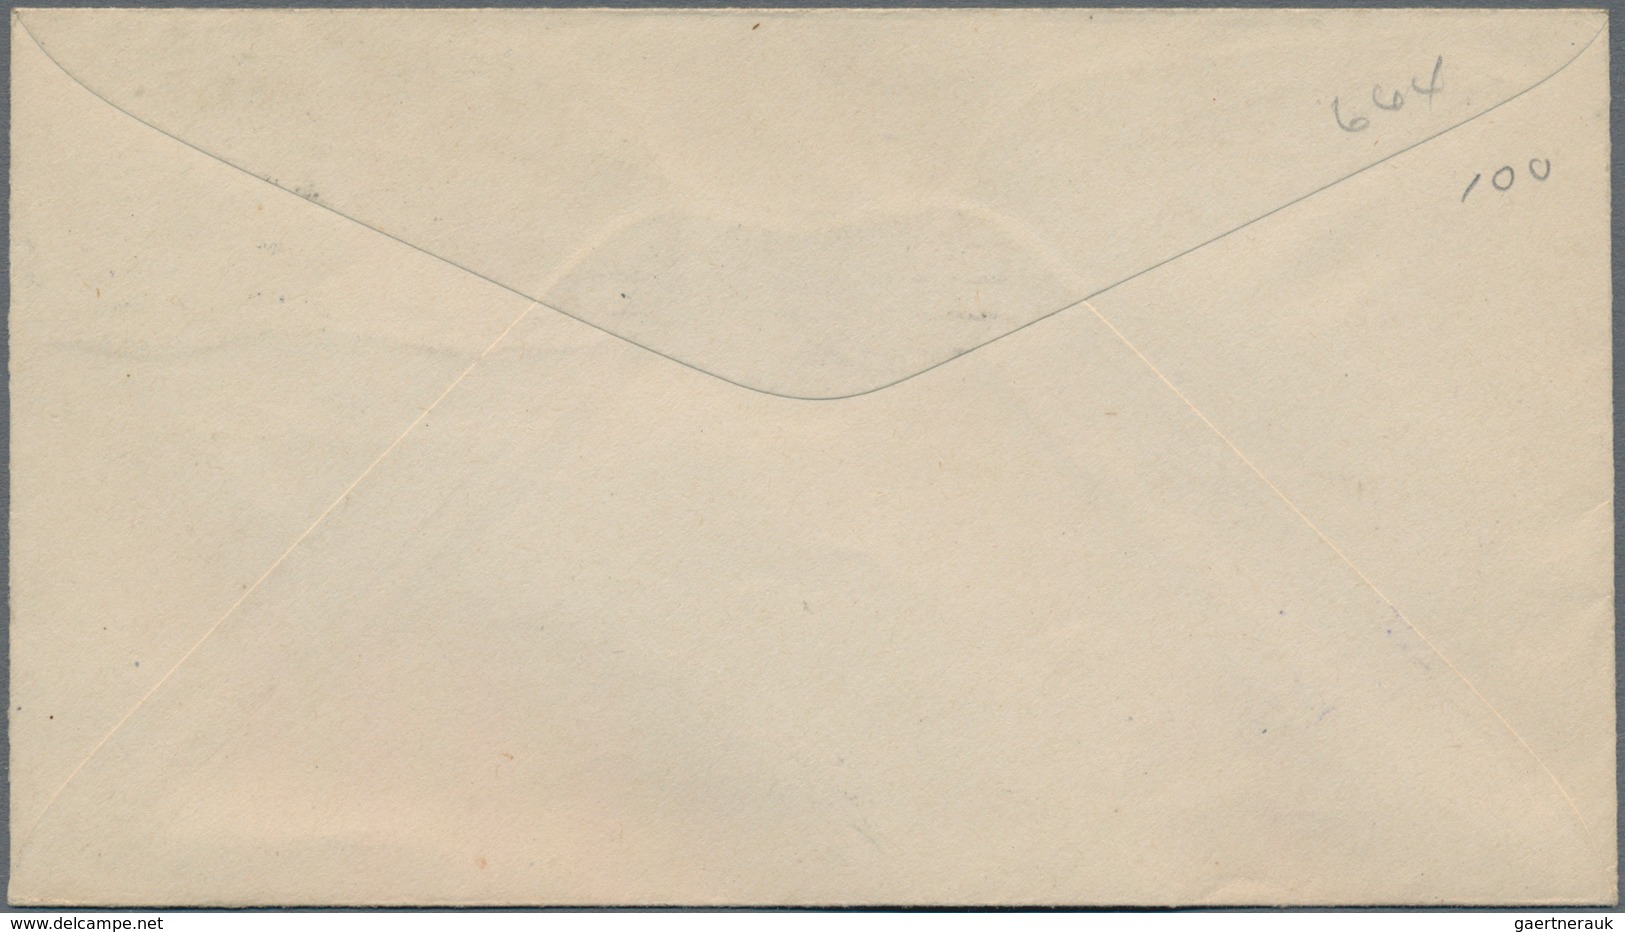 Vereinigte Staaten Von Amerika: 1929. 6c Kansas (Scott 664) Tied By "Newton Kans. Apr. 15 1929" True - Used Stamps